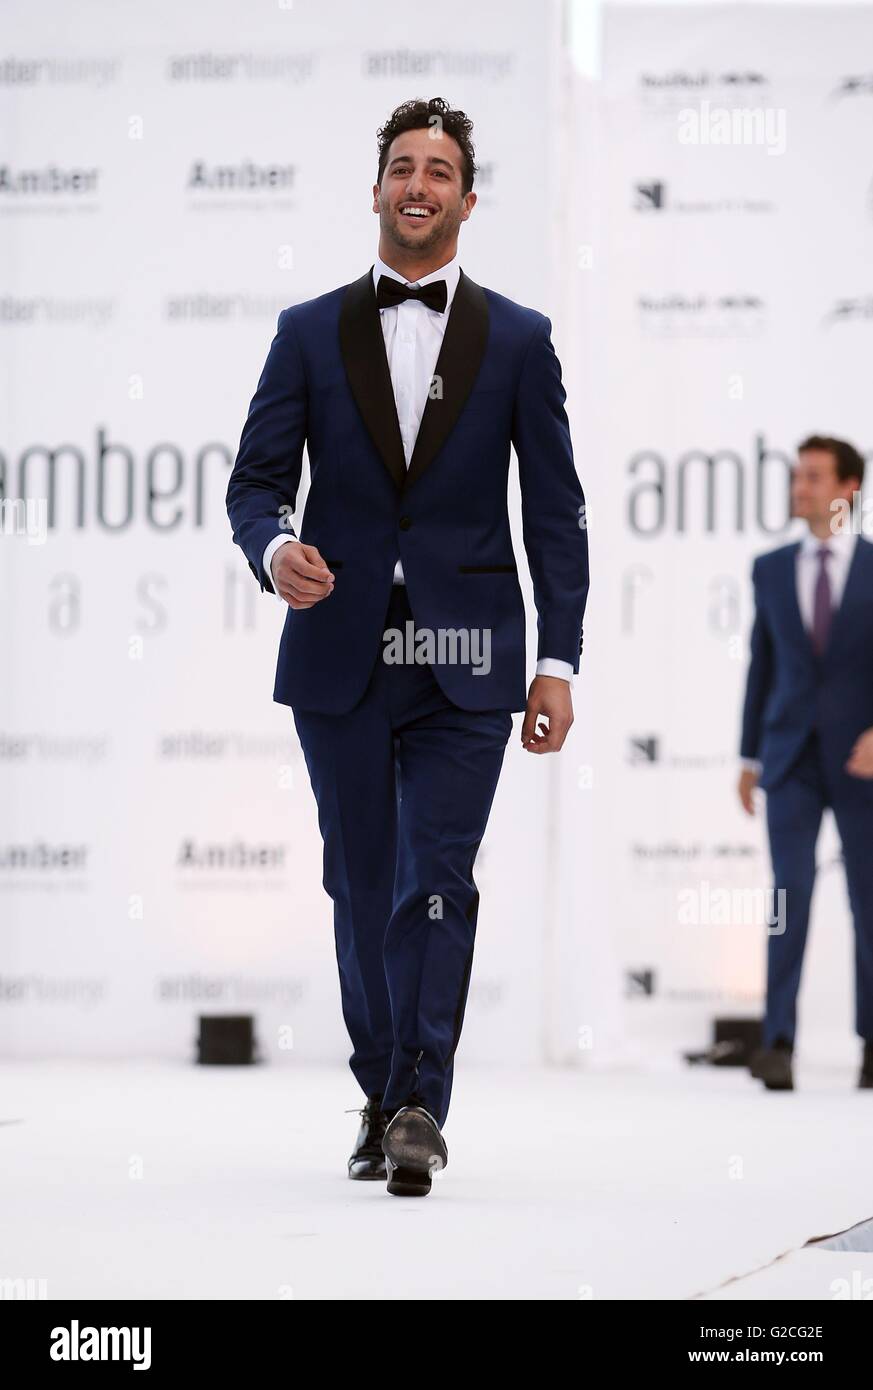 La Red Bull Racing driver di Formula 1 Daniel Ricciardo durante l'Amber Lounge fashion show a Le Meridien Hotel, Monaco. Foto Stock